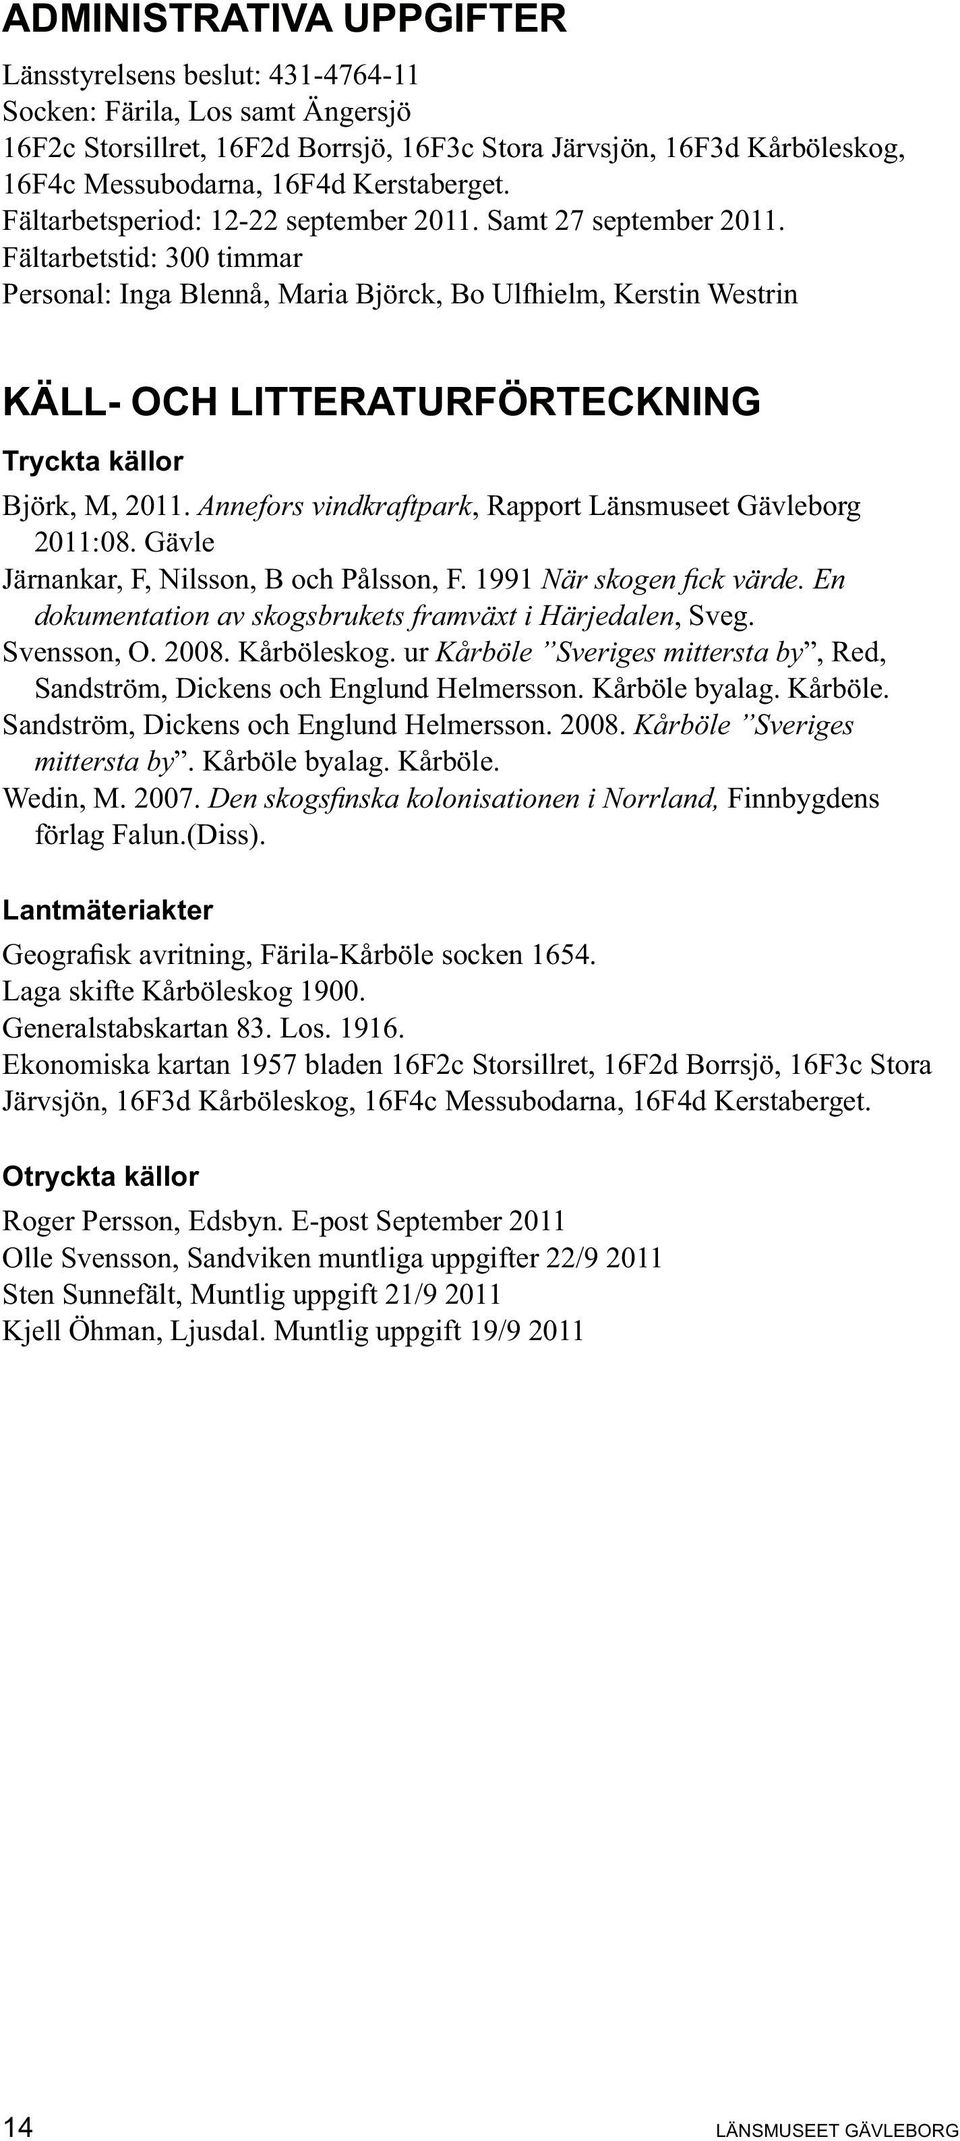 Fältarbetstid: 300 timmar Personal: Inga Blennå, Maria Björck, Bo Ulfhielm, Kerstin Westrin KÄLL- OCH LITTERATURFÖRTECKNING Tryckta källor Björk, M, 2011.